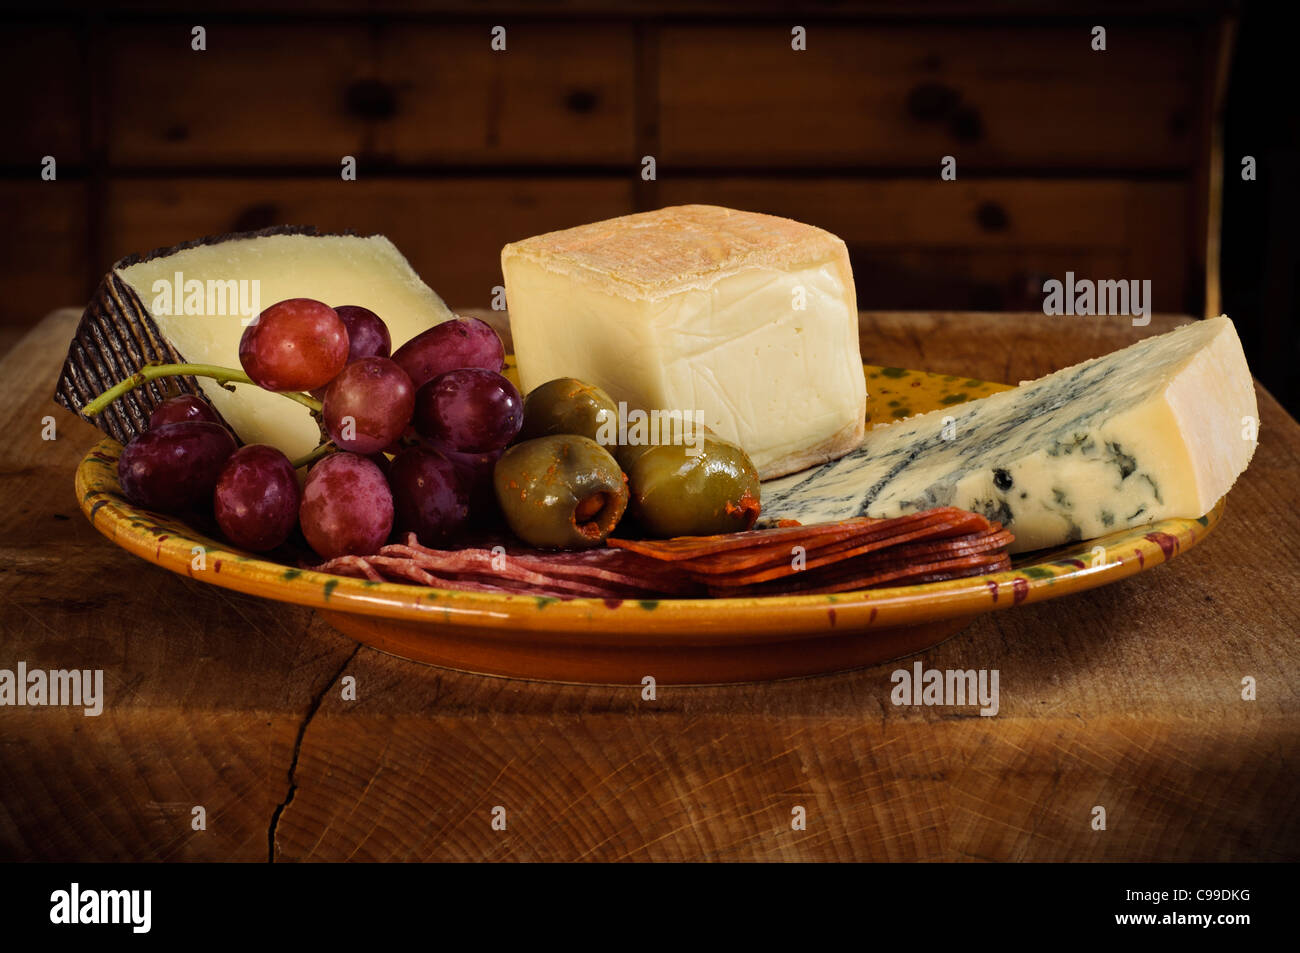 Petite assiette d'antipasti italiens pour la plupart des fromages et viandes avec des olives et des raisins Banque D'Images